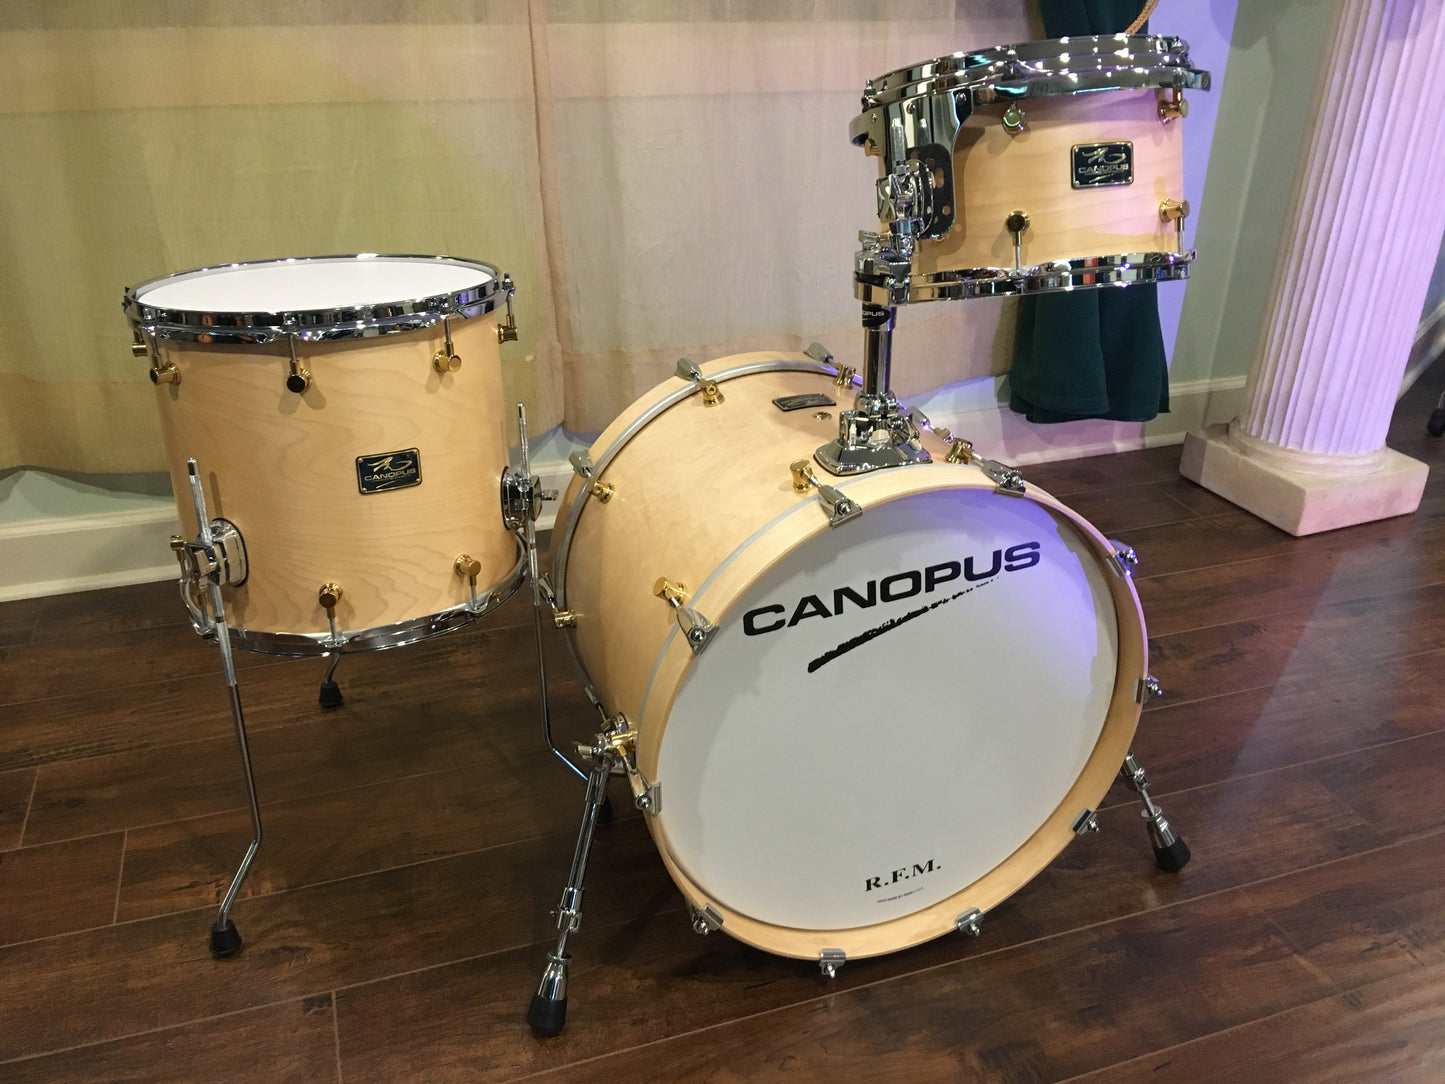 Canopus R.F.M. Studio Kit Drum Set - Natural Oil 20/12/14